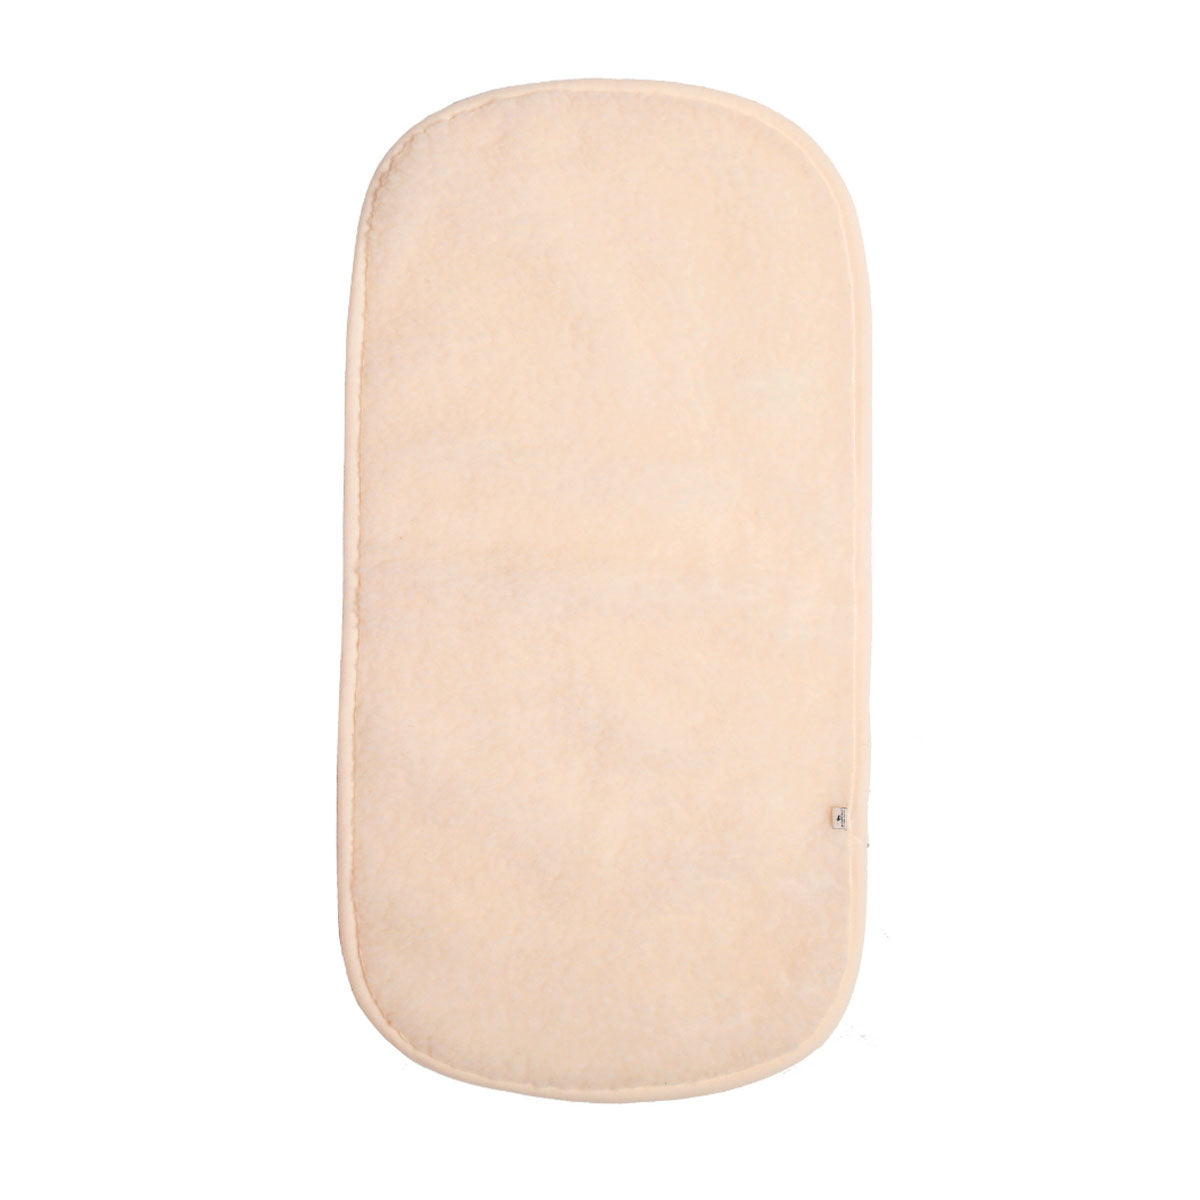 De matrasbeschermer voor de wieg van het merk Alwero in de kleur beige is perfect voor jouw baby. Warm, zacht, comfortabel en ventilerend. Afmeting 80x42 cm. VanZus